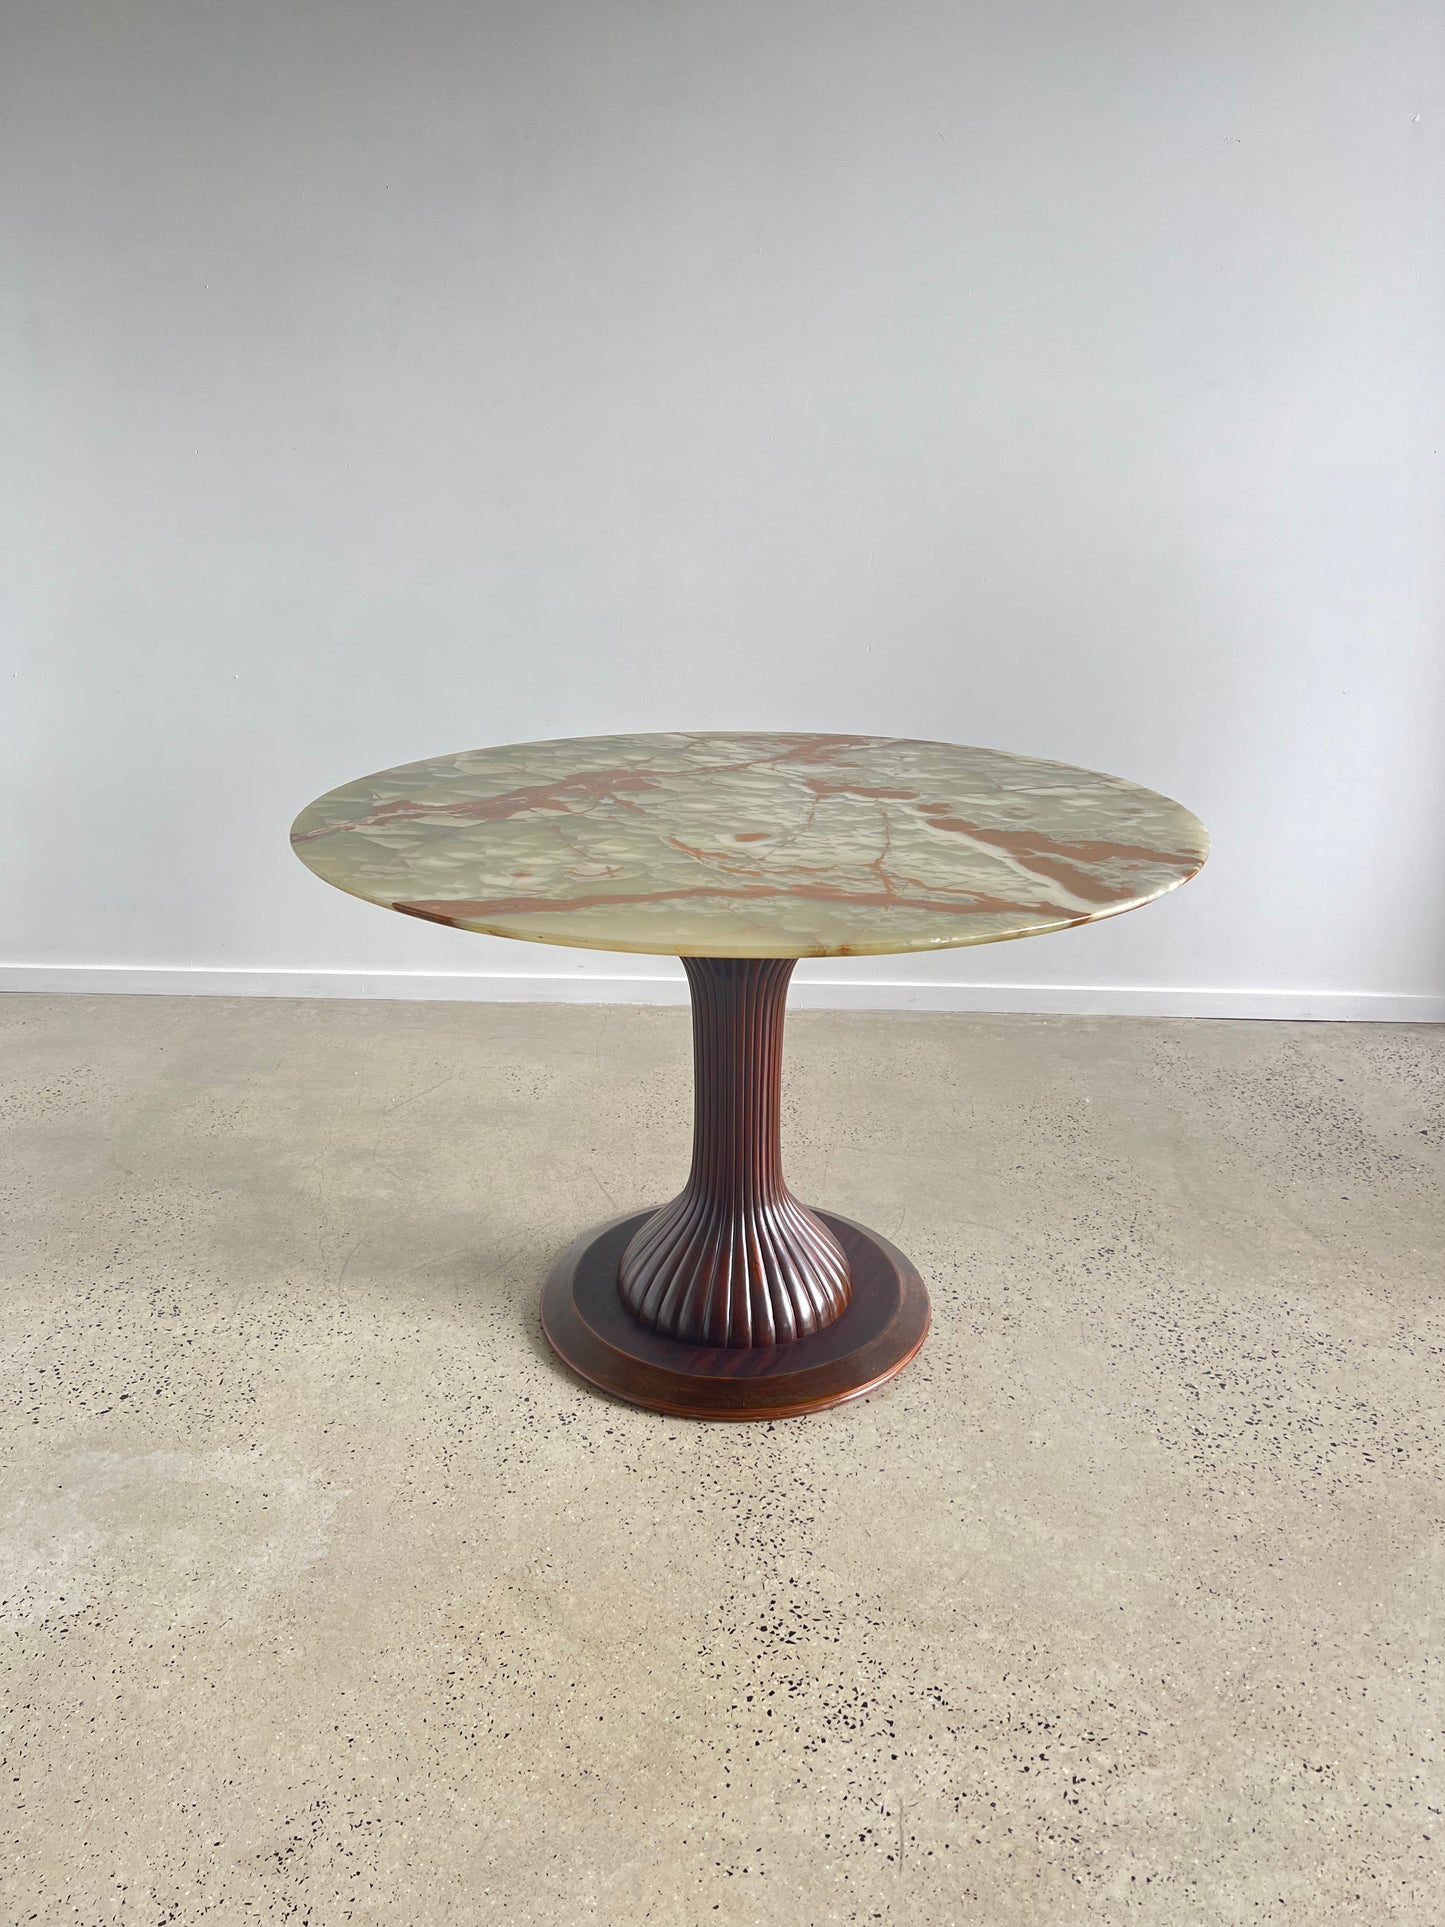 Osvaldo Borsani for Arredamento Borsani Dining Pedestal Table in Onyx and Mahogany, 1950s